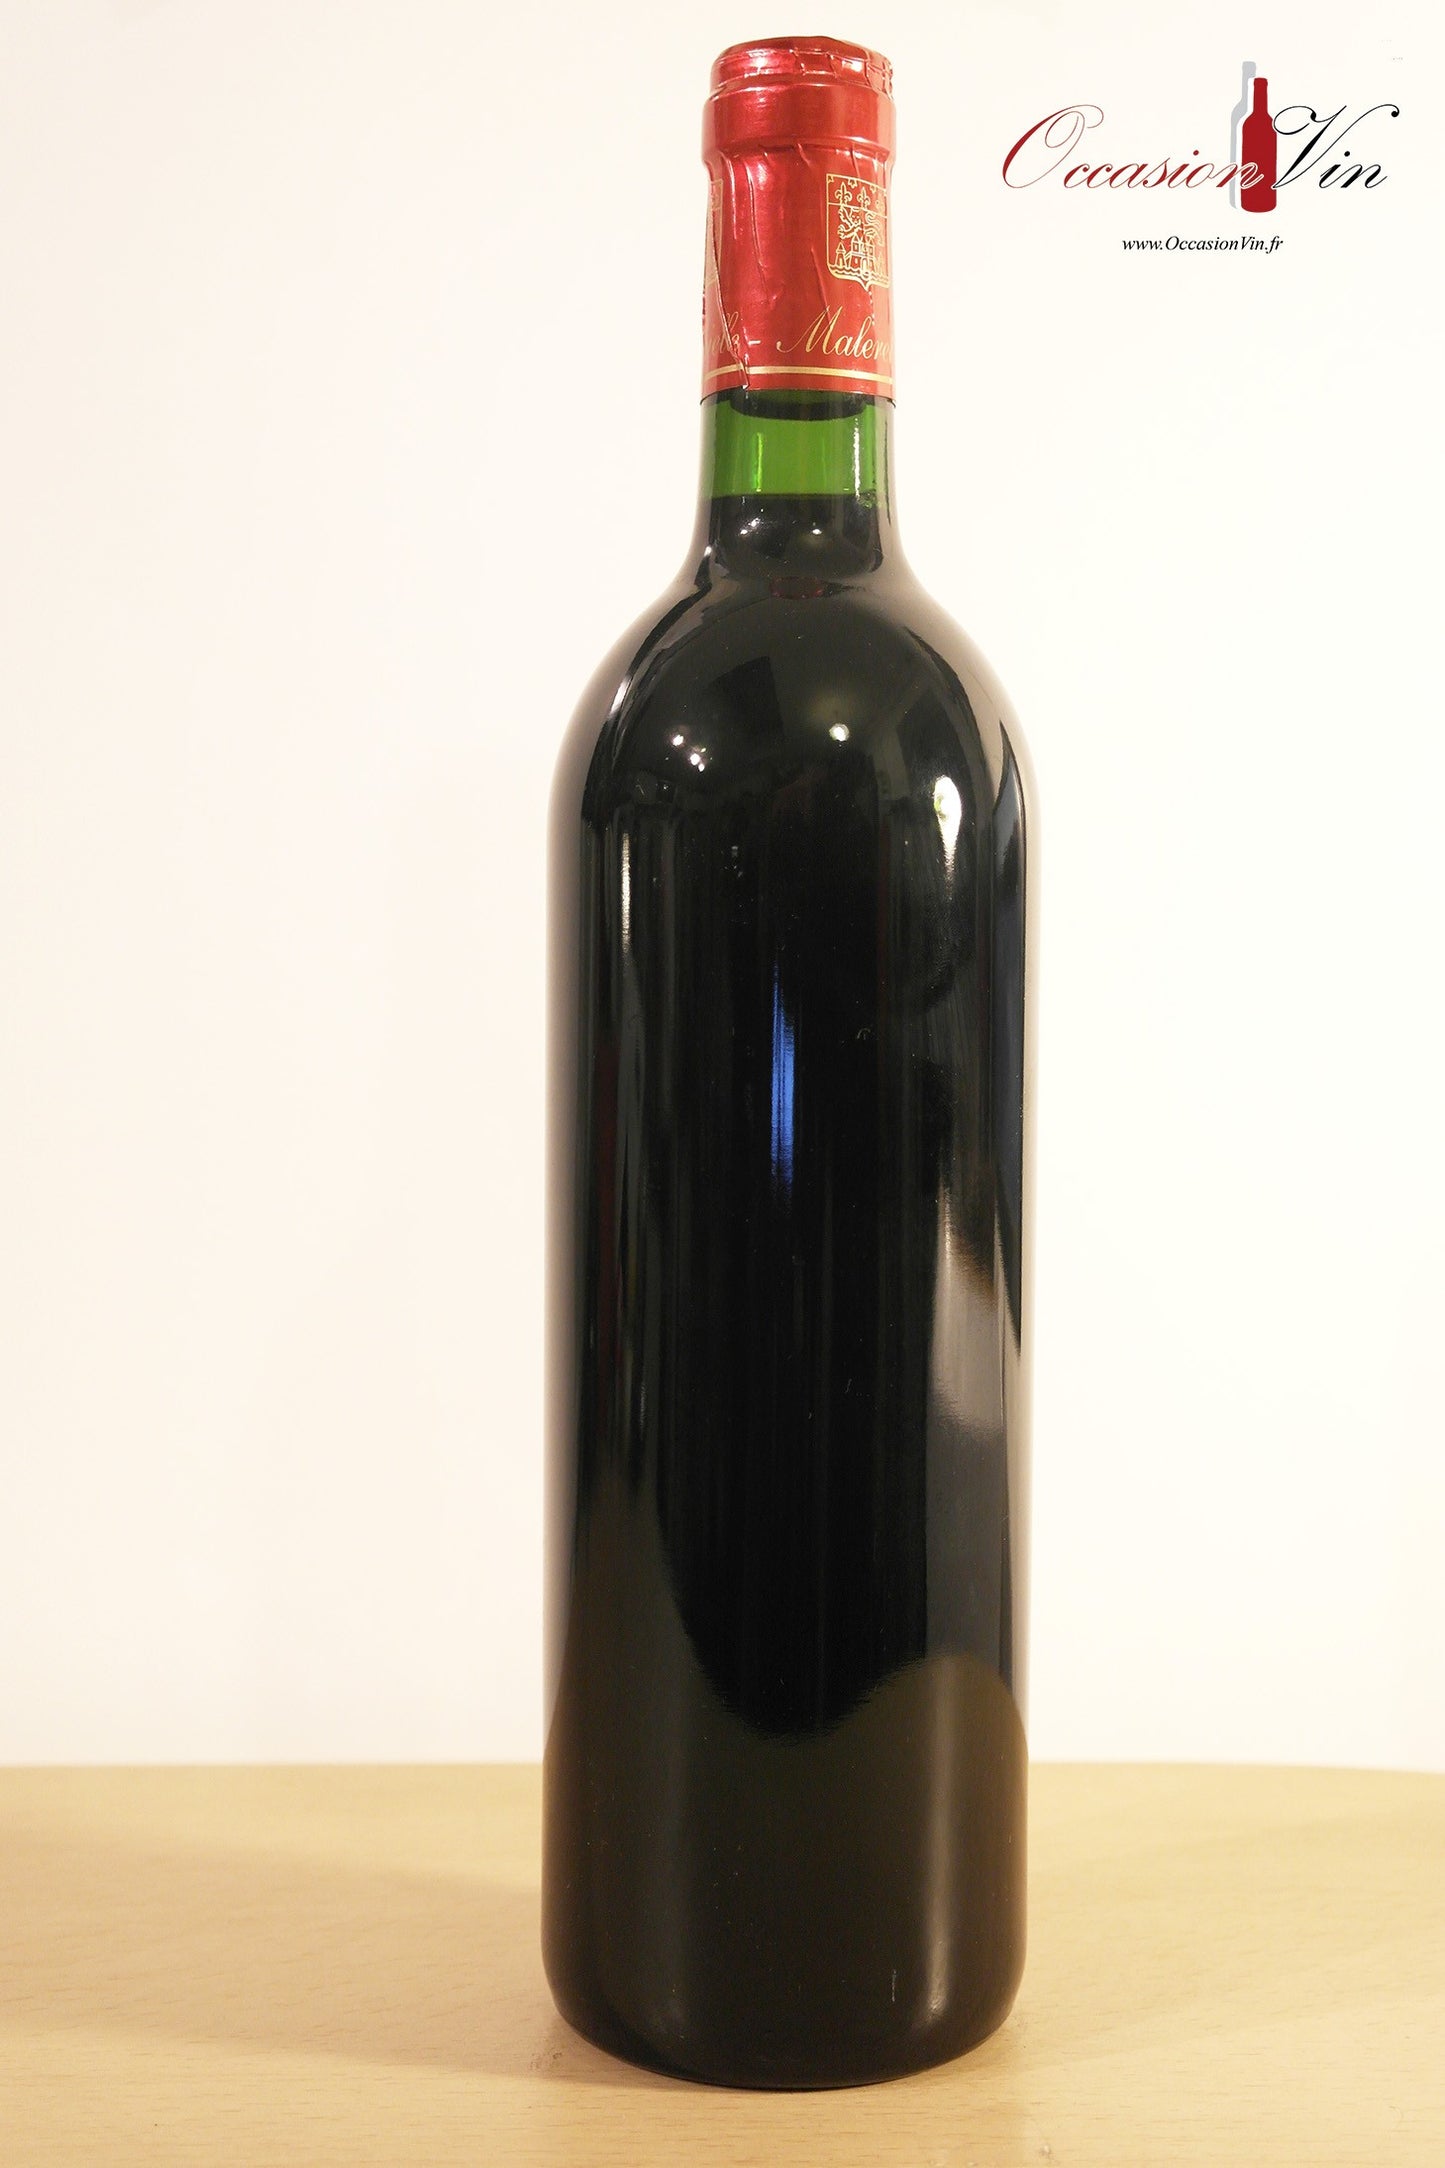 Château Vigneau Vin 2003